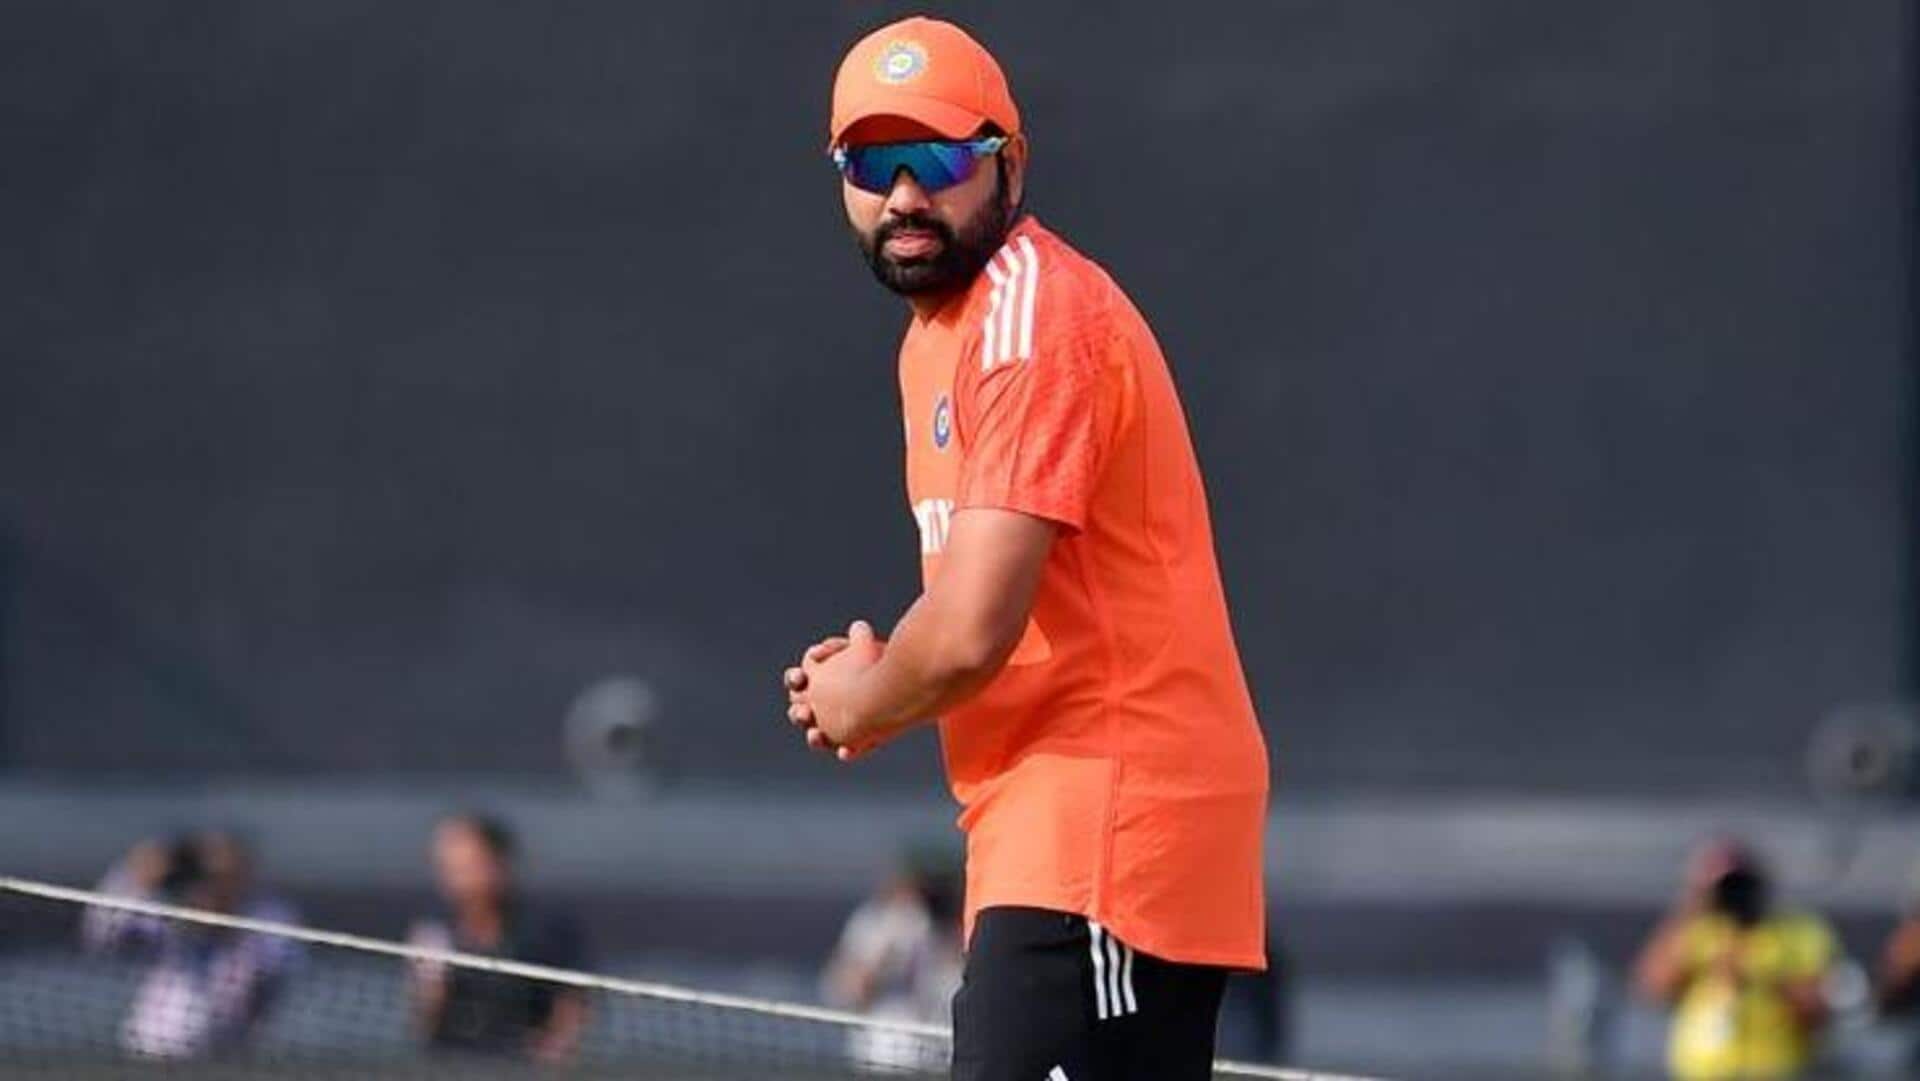 रोहित शर्मा ने बतौर कप्तान इस साल अंतरराष्ट्रीय क्रिकेट में बनाए हैं सर्वाधिक रन, जानिए आंकड़े